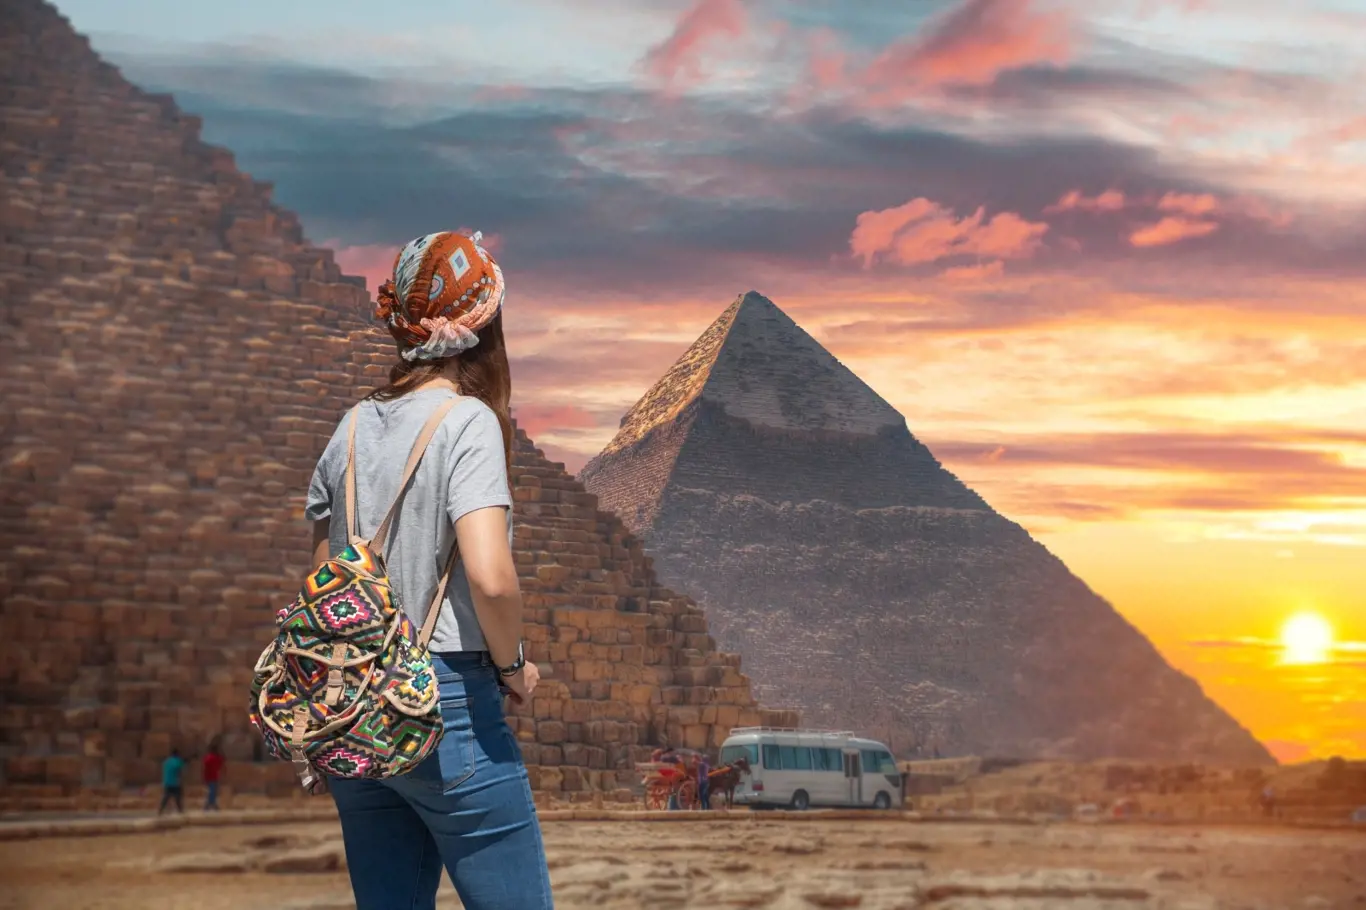 Pyramidy v Gíze jsou jednou z nejlákavějších turistických atrakcí